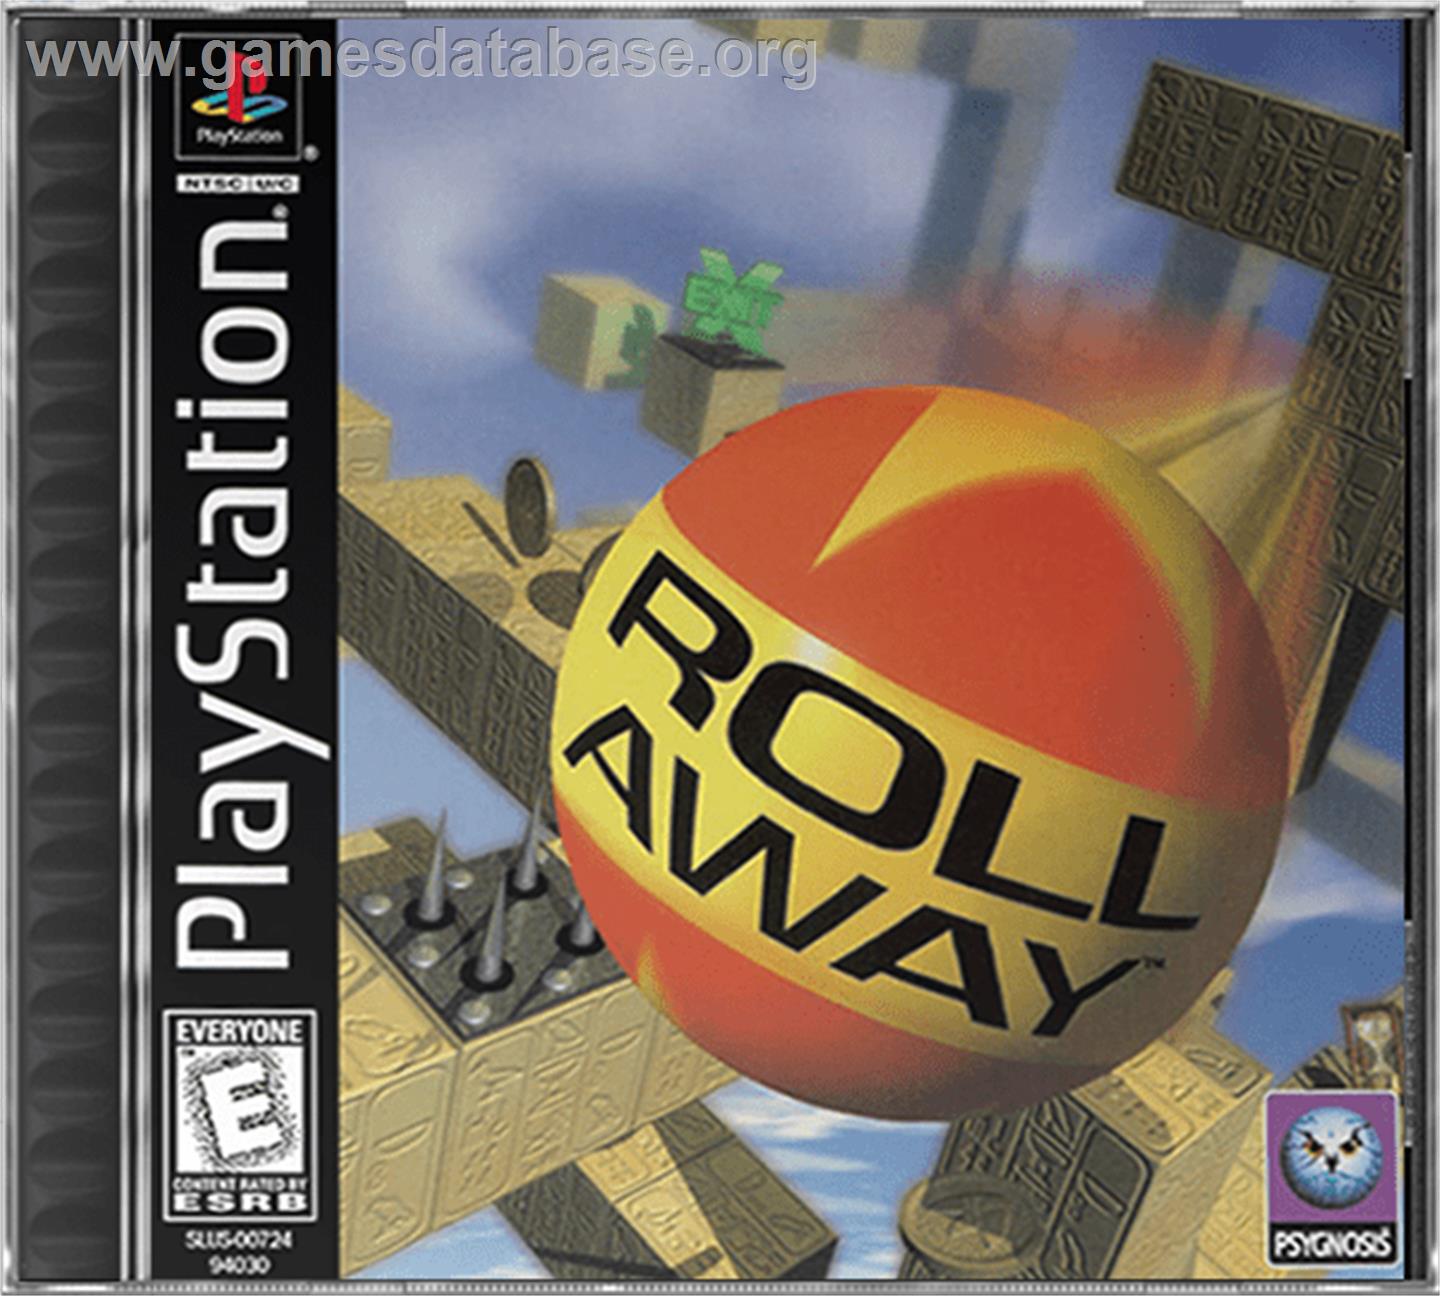 Roll Away - Sony Playstation - Artwork - Box